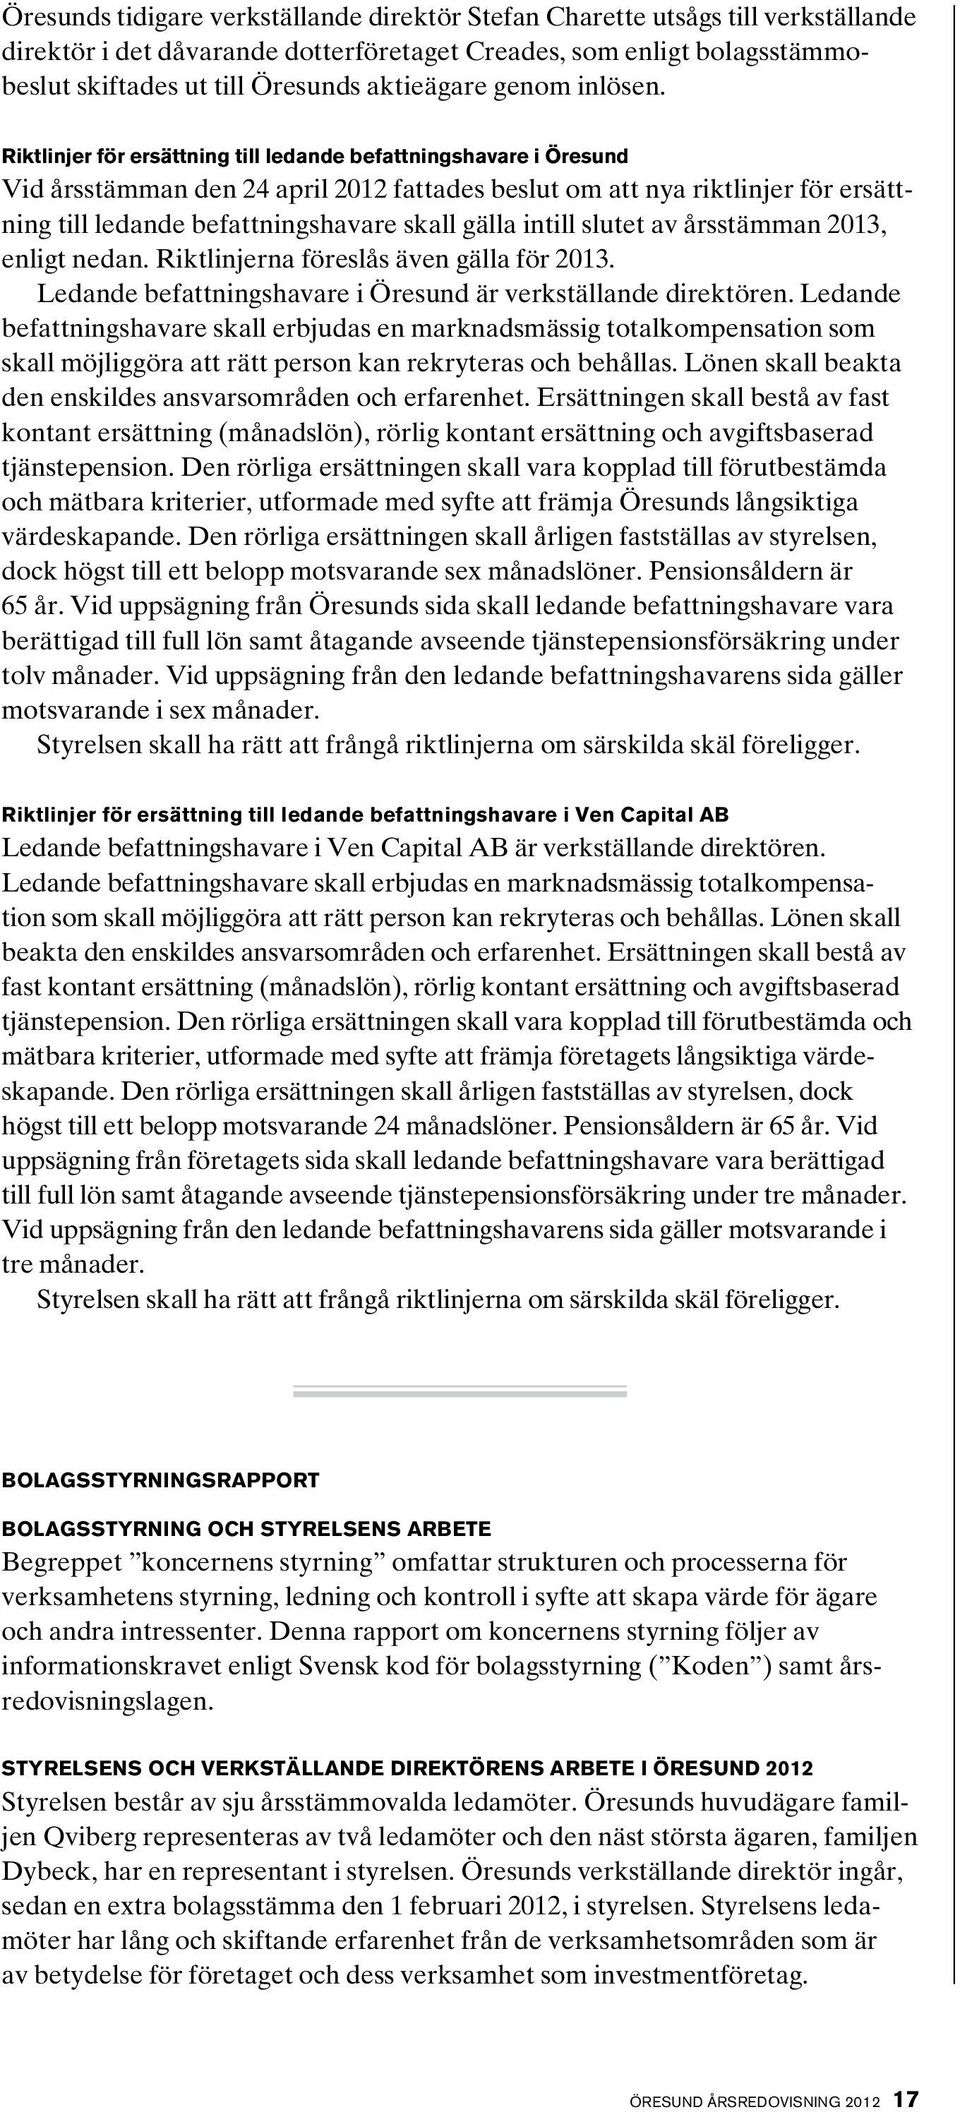 Riktlinjer för ersättning till ledande befattningshavare i Öresund Vid årsstämman den 24 april 2012 fattades beslut om att nya riktlinjer för ersättning till ledande befattningshavare skall gälla